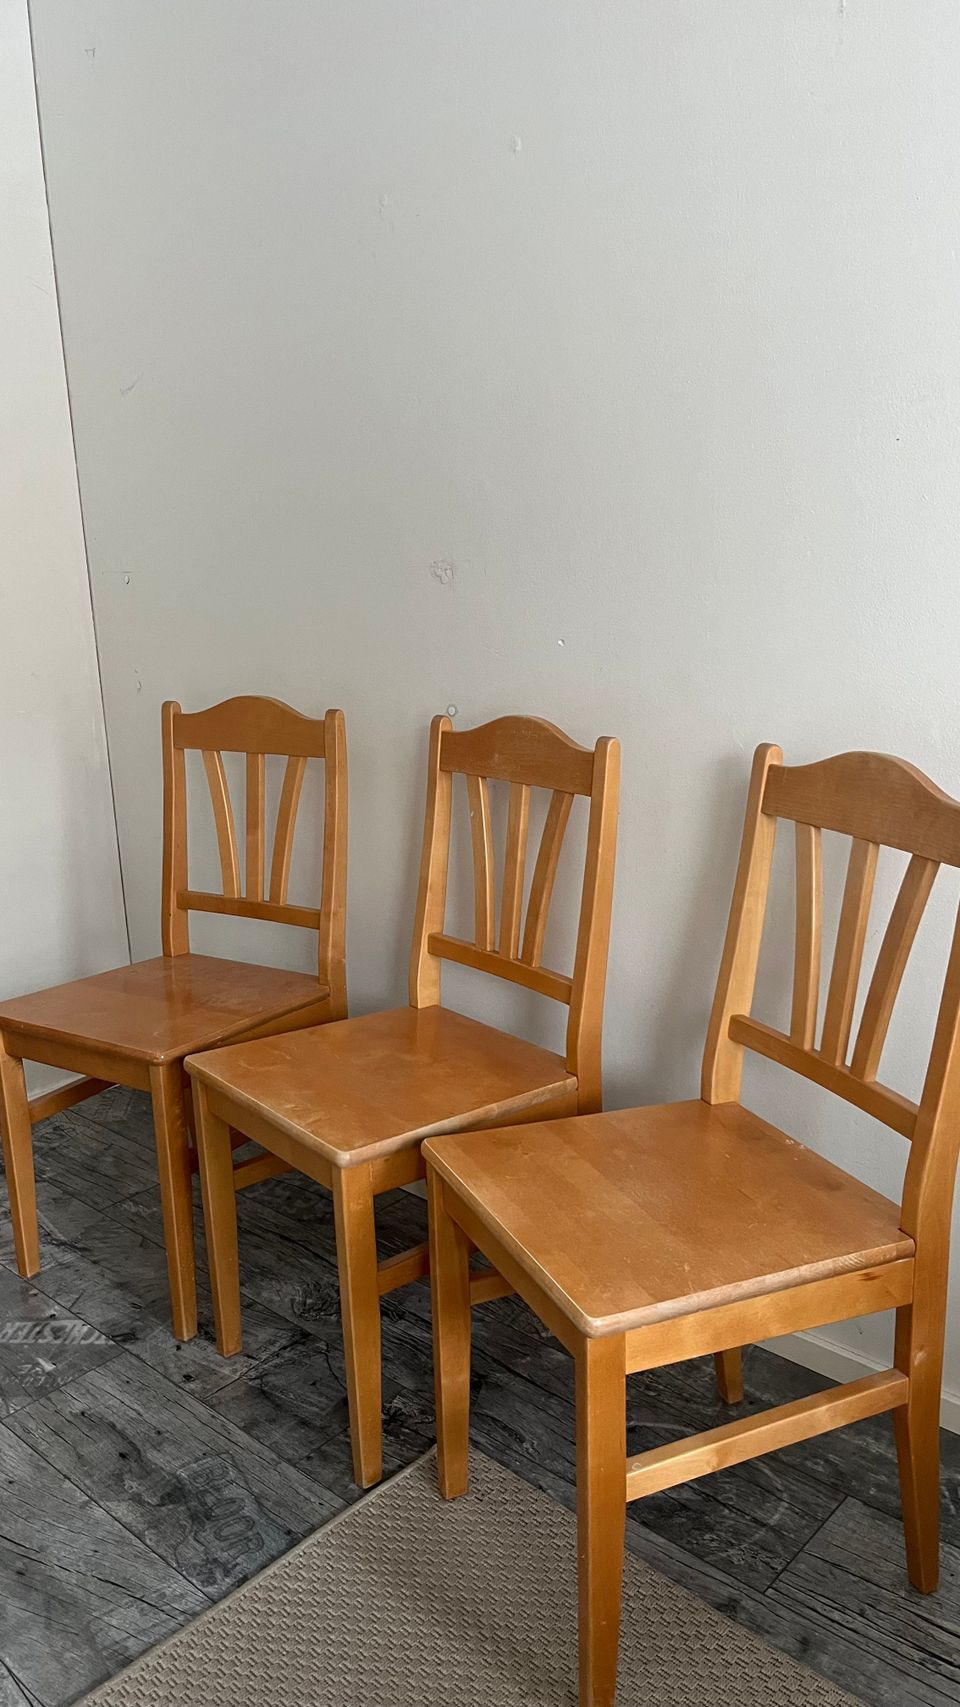 4 kpl puisia tuoleja